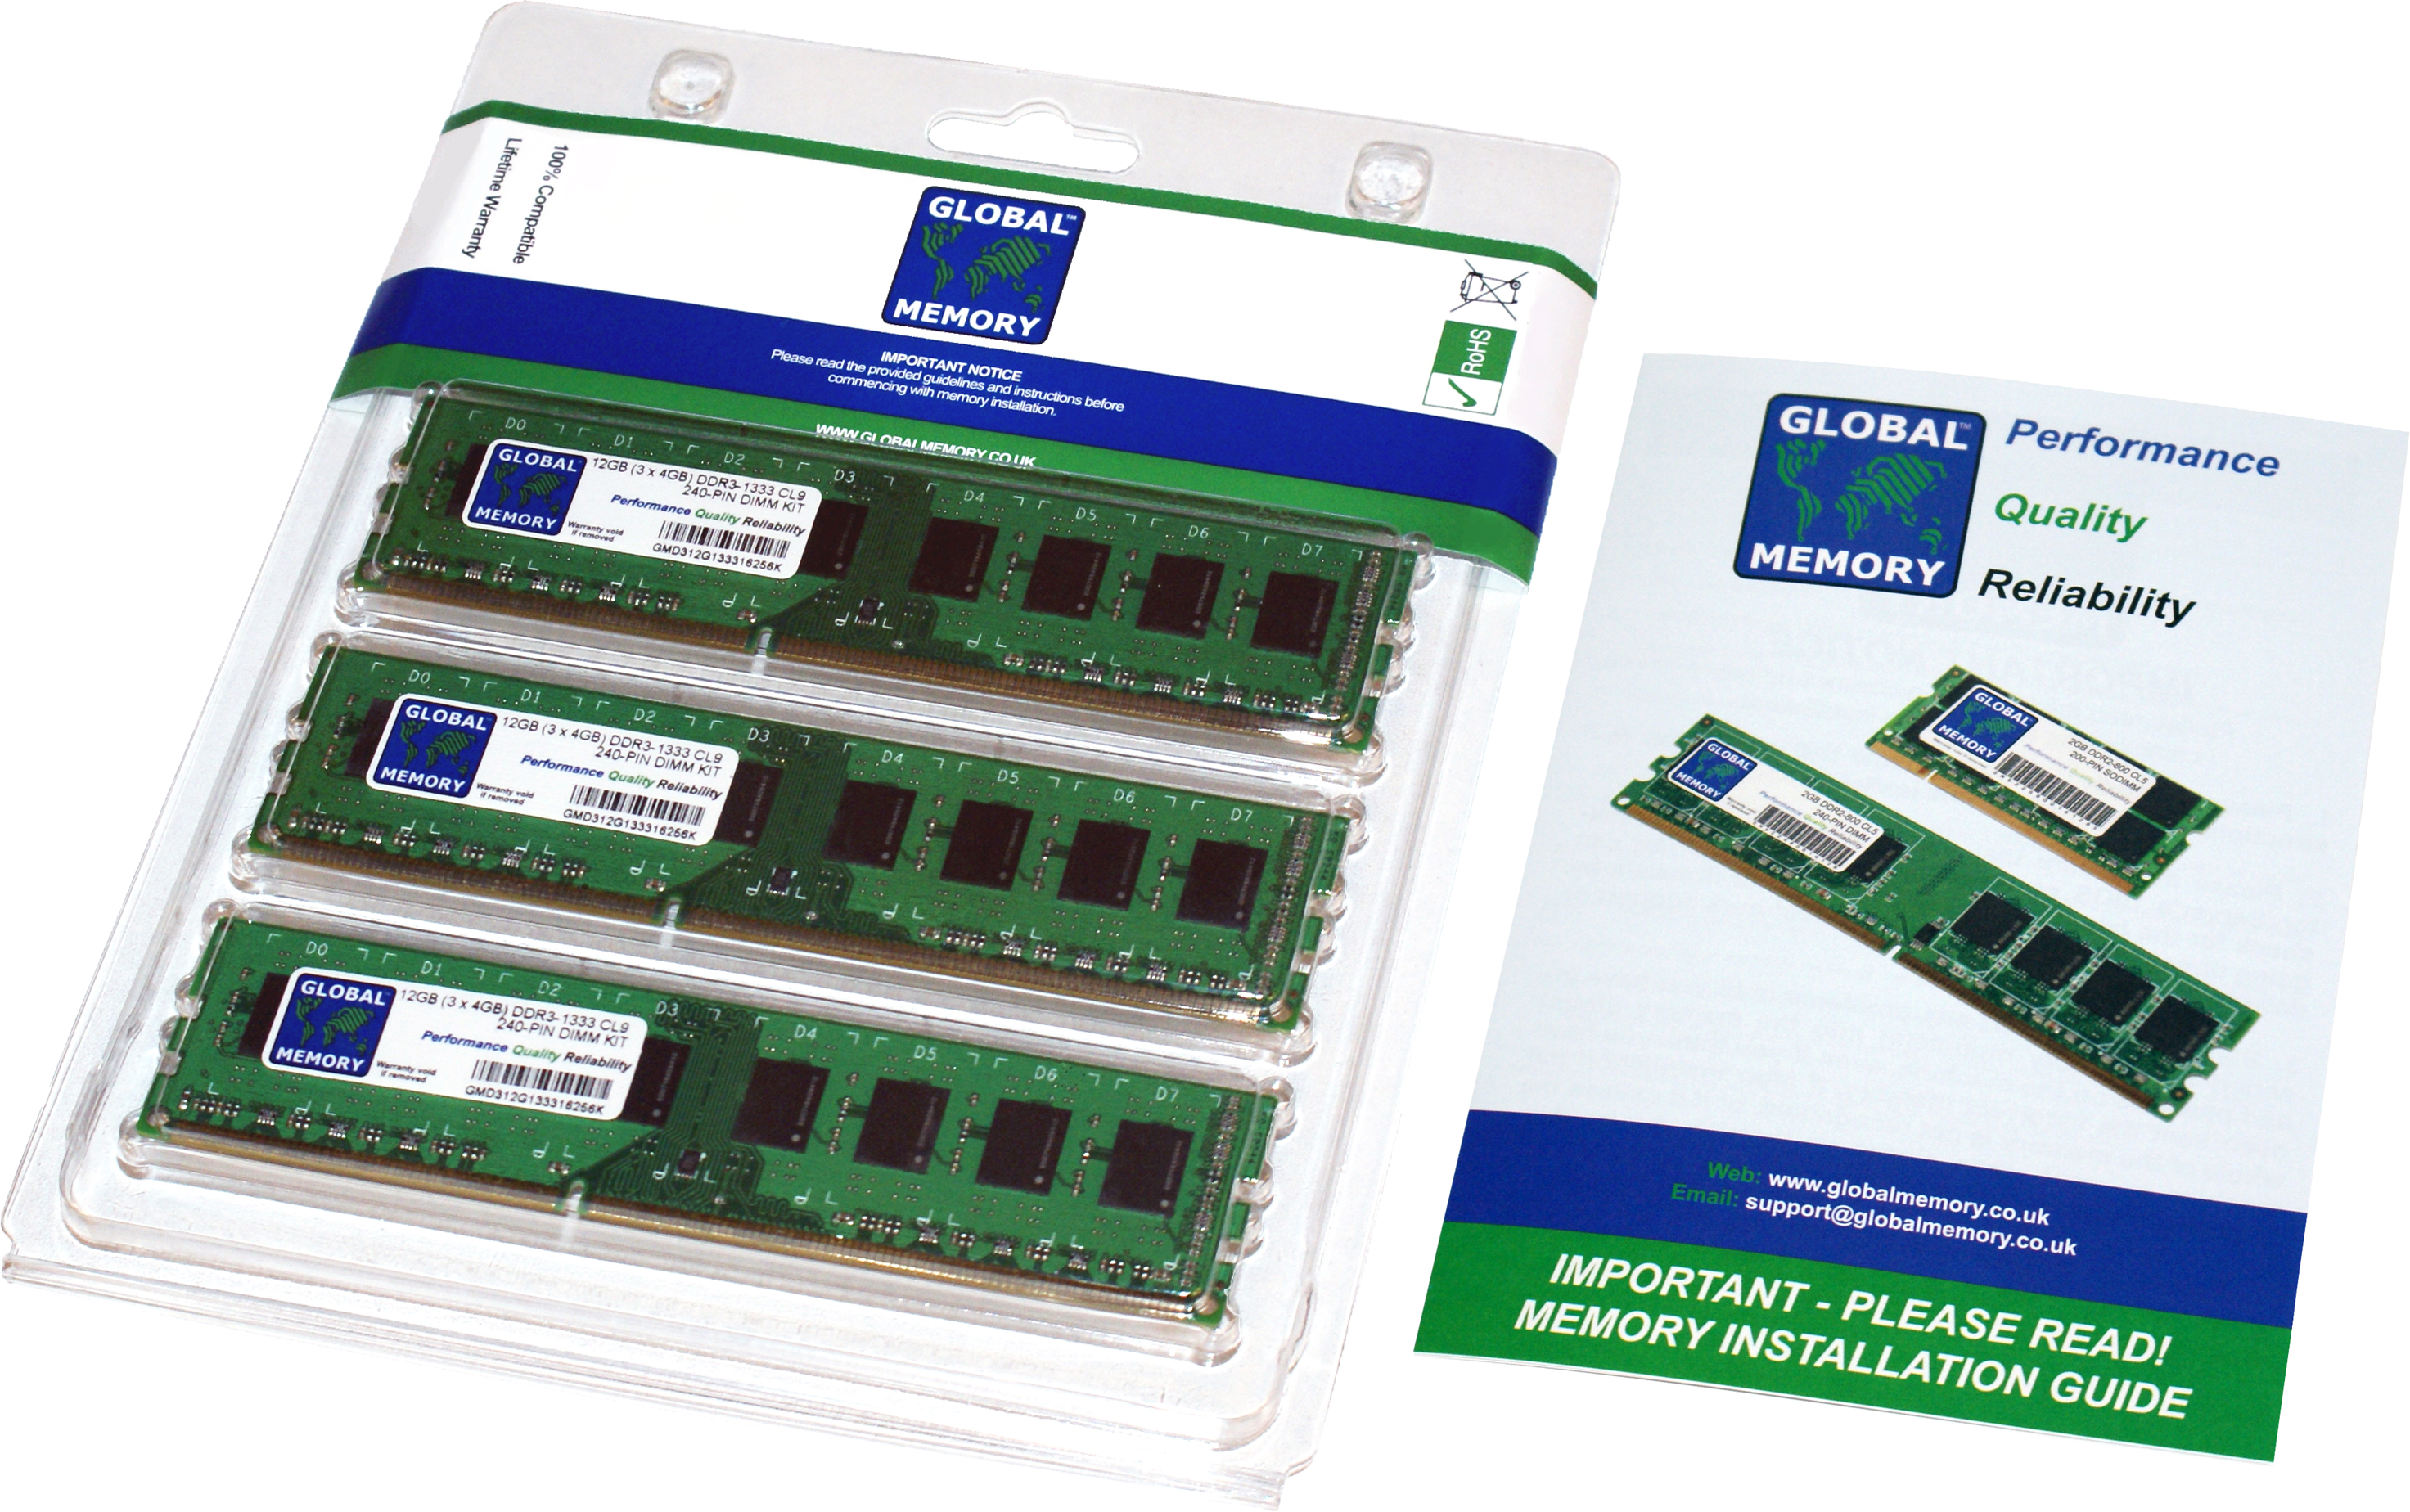 24GB (3 x 8GB) DDR3 1866MHz PC3-14900 240-PIN DIMM MEMORY RAM KIT FOR FUJITSU DESKTOPS